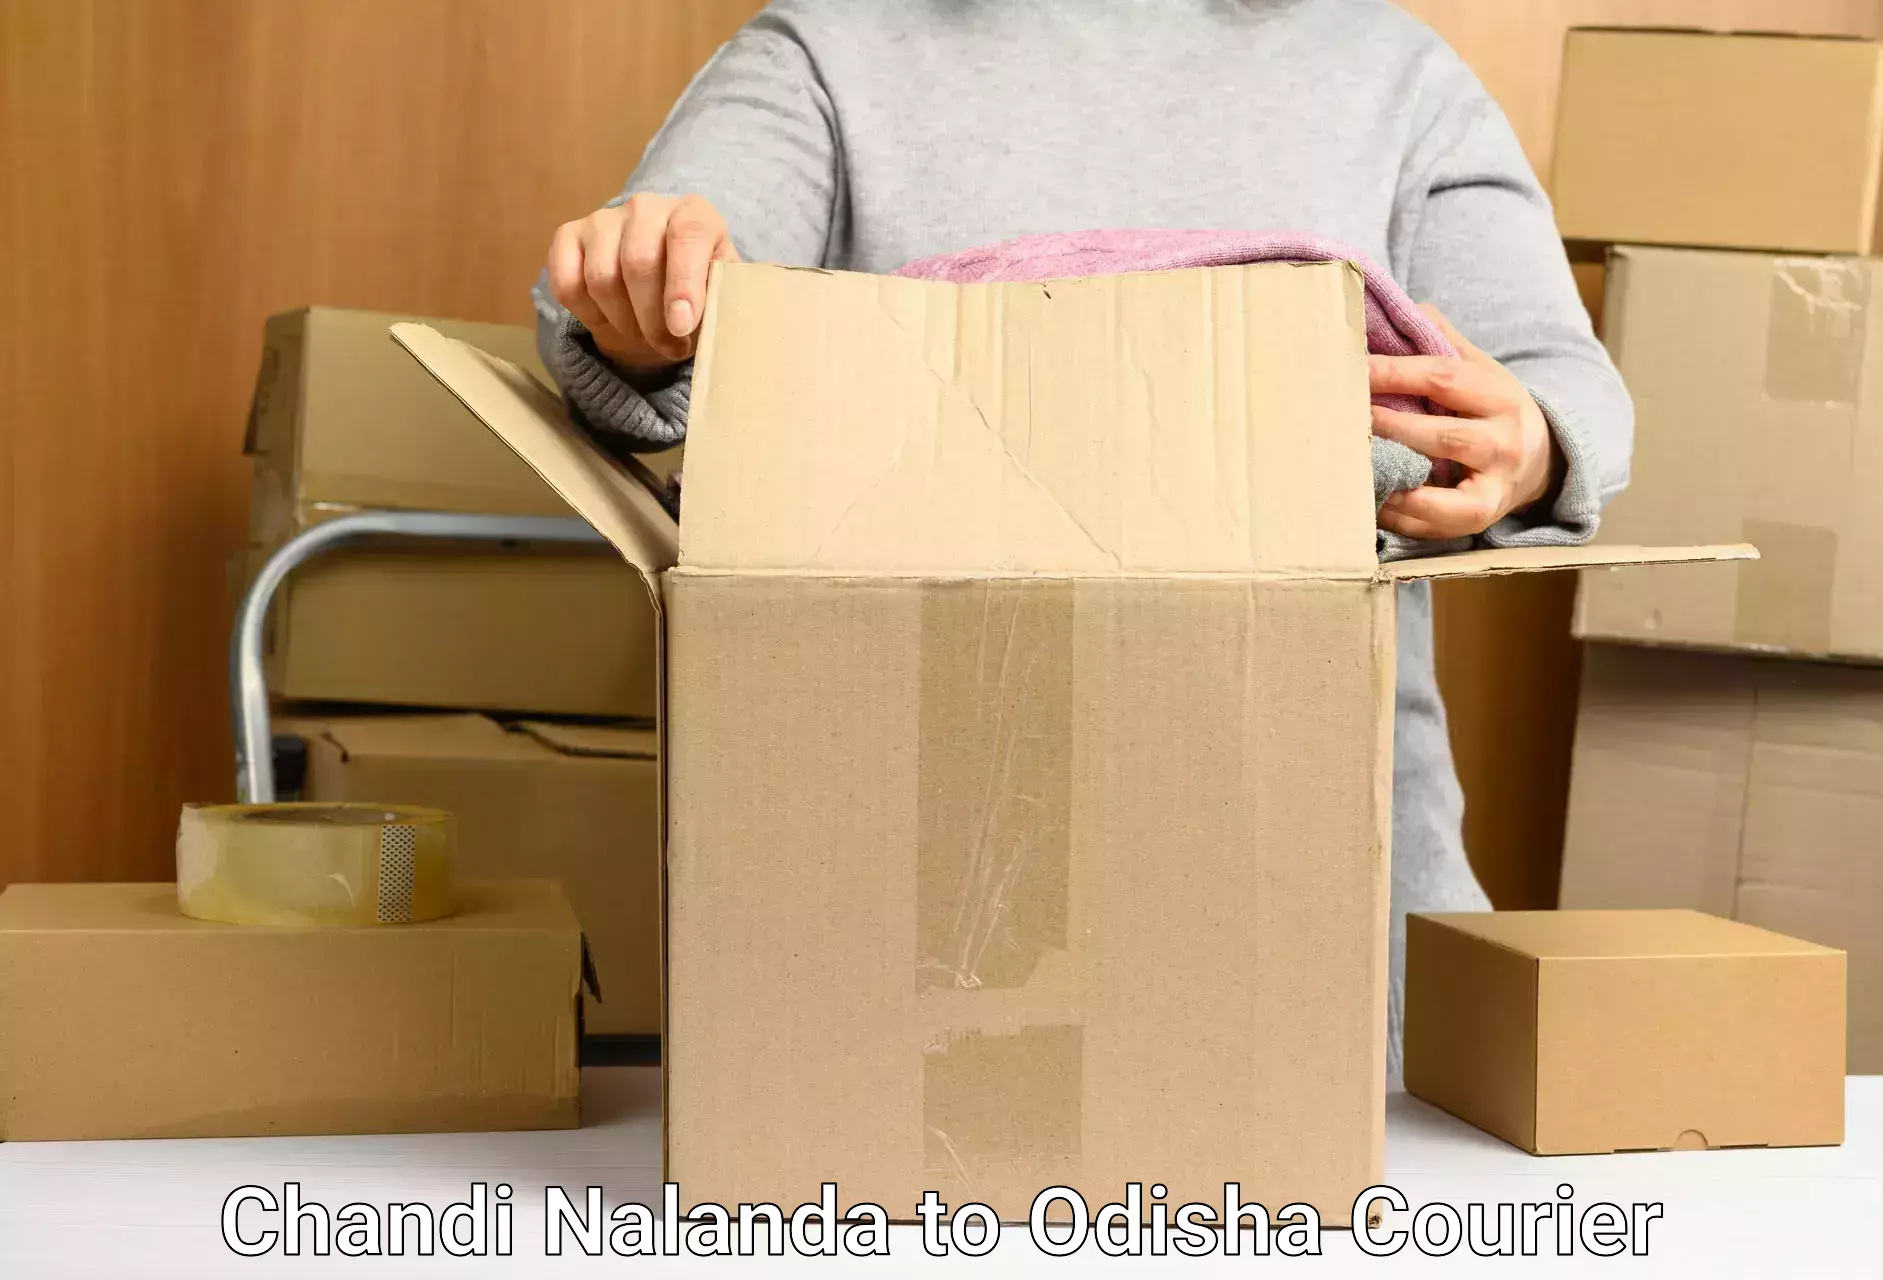 Logistics service provider Chandi Nalanda to Rairangpur